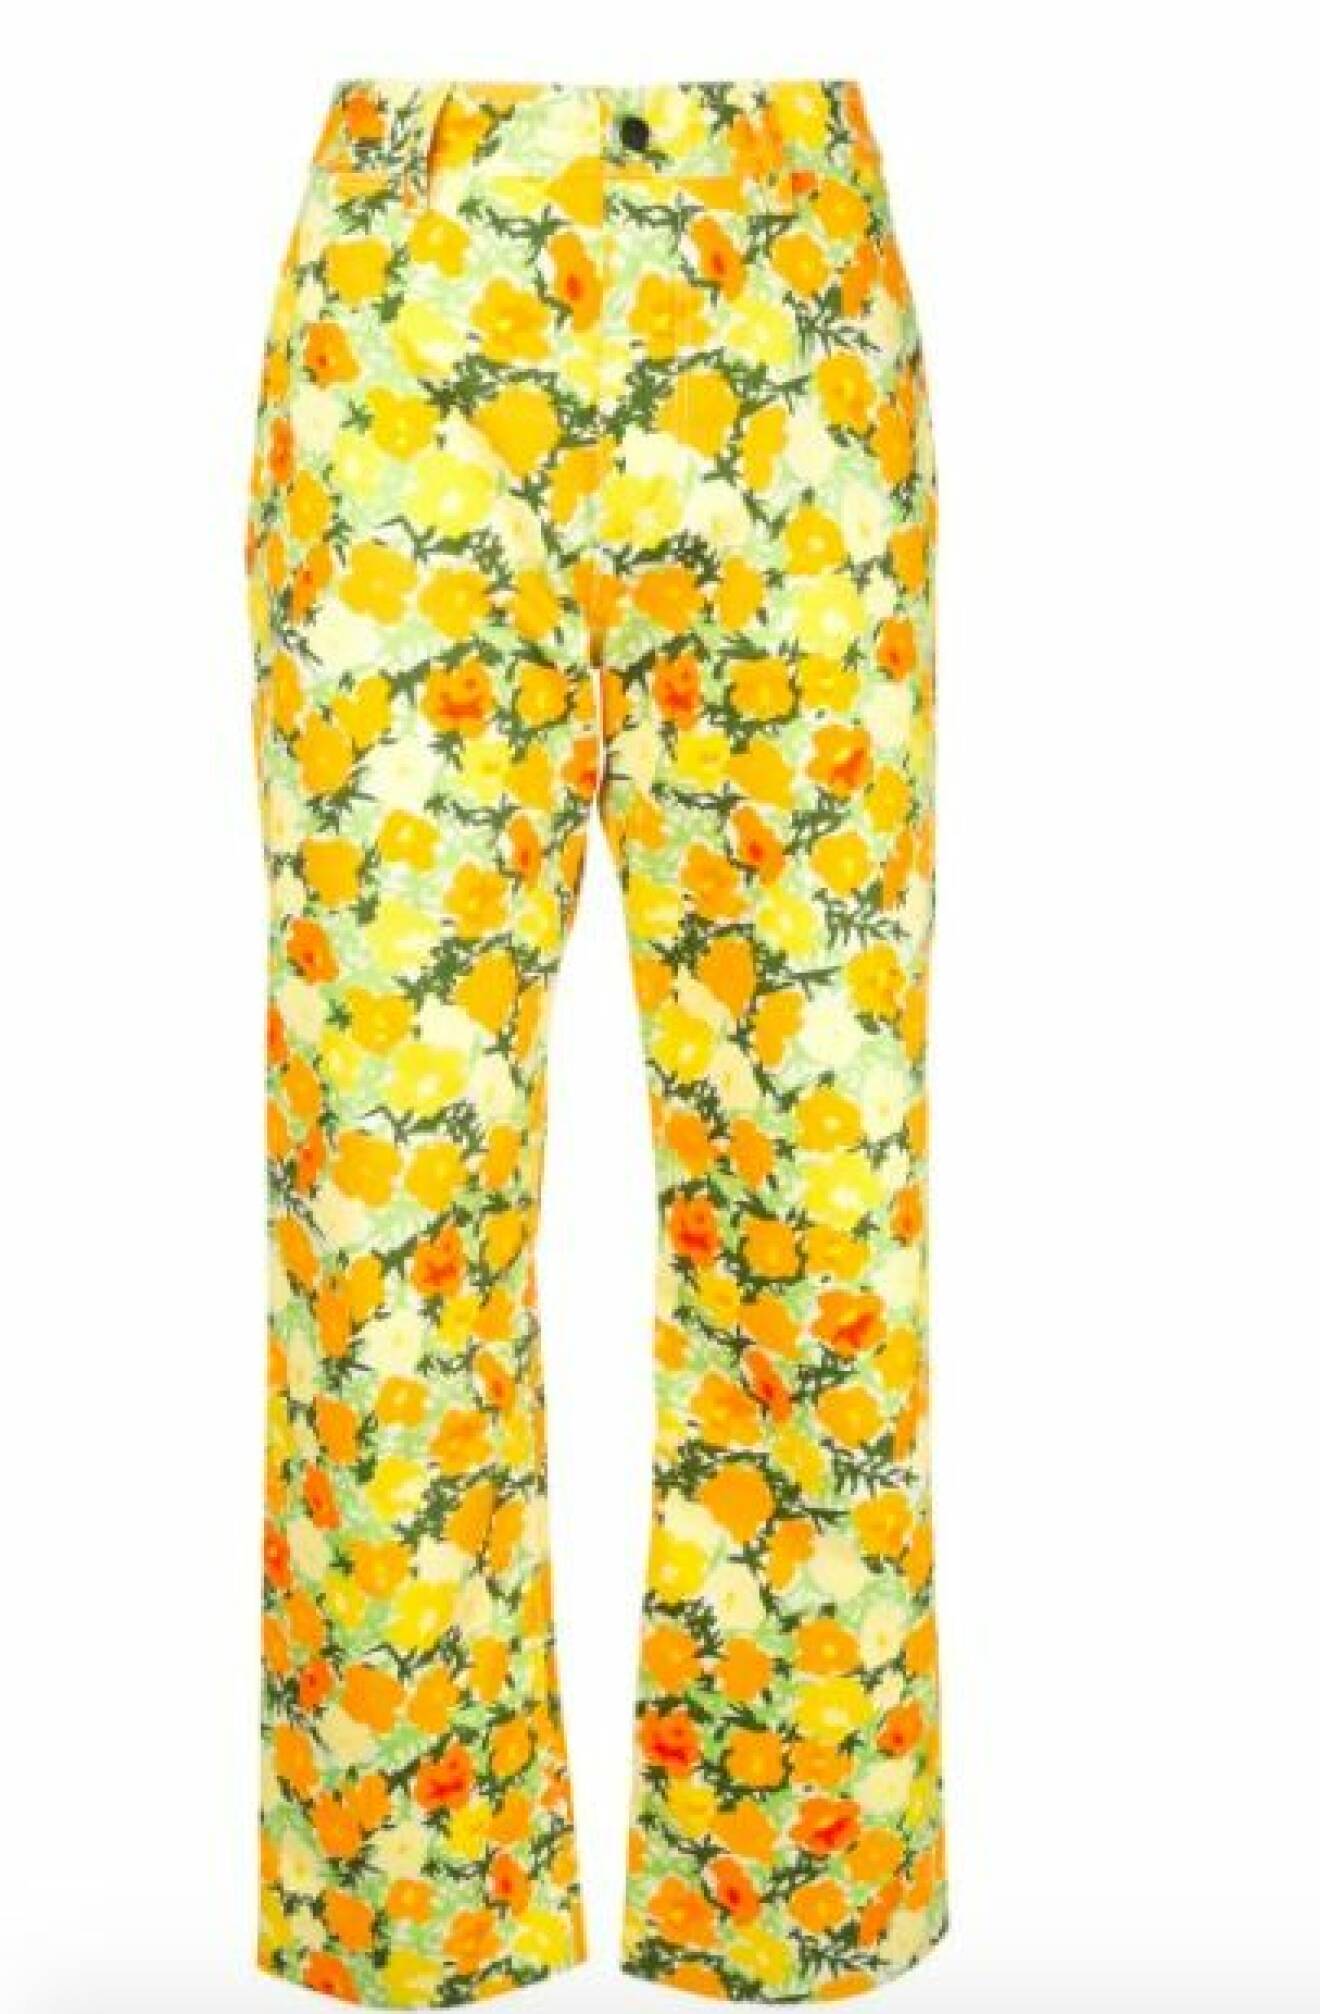 Blommiga jeans i gult och orange. Jeansen har hög midja och croppade, lätt utställda ben. Jeans från Simon Miller.